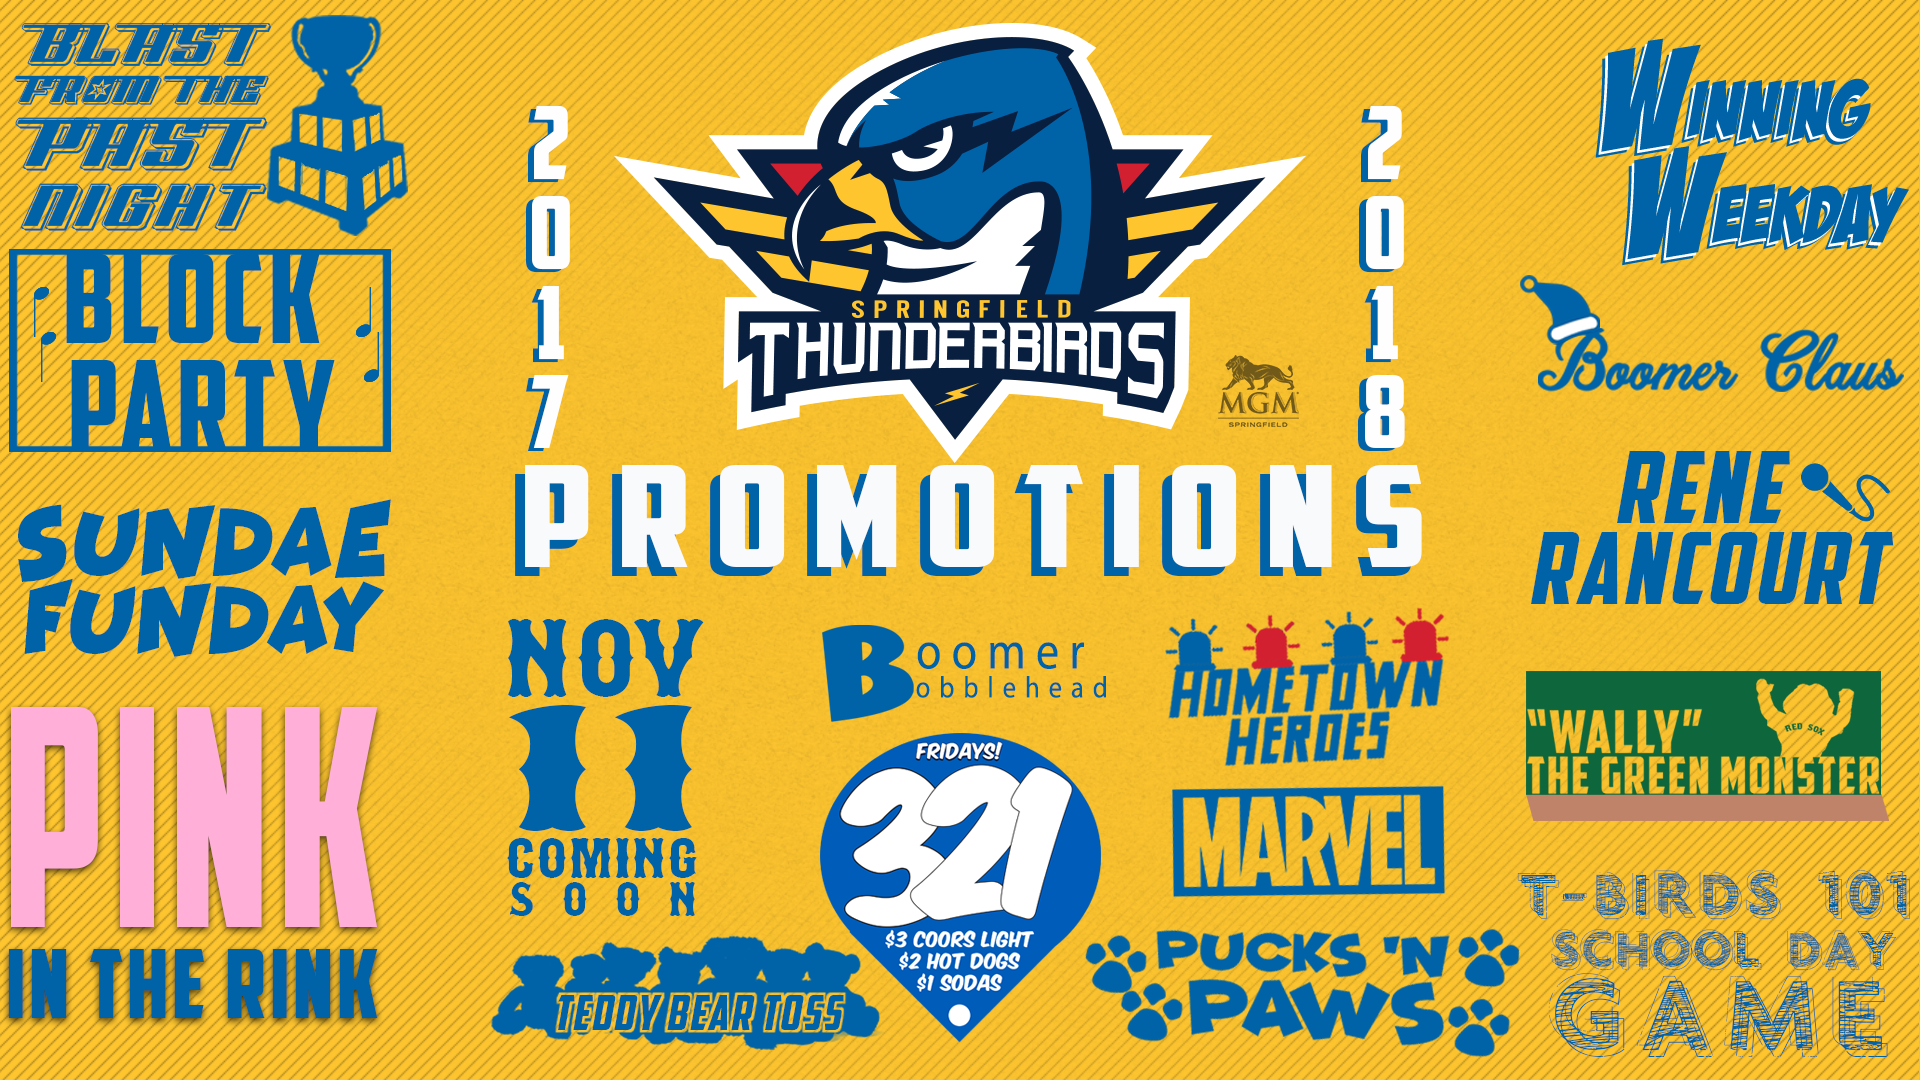 Springfield Thunderbirds debut red-sox-themed jerseys